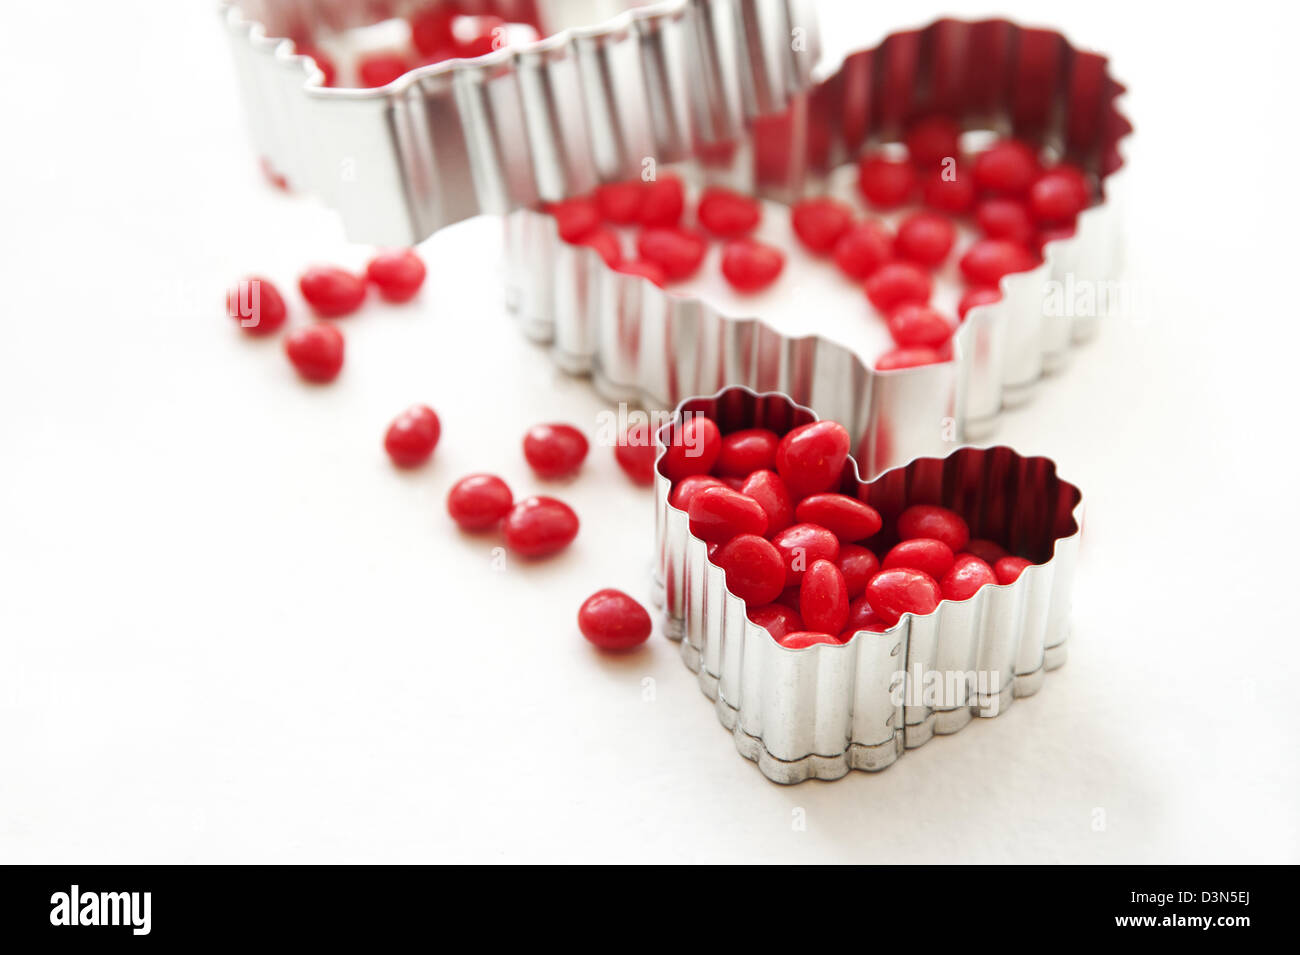 Bonbons coeurs Rouge cannelle et d'un emporte-pièce en forme de coeur Banque D'Images